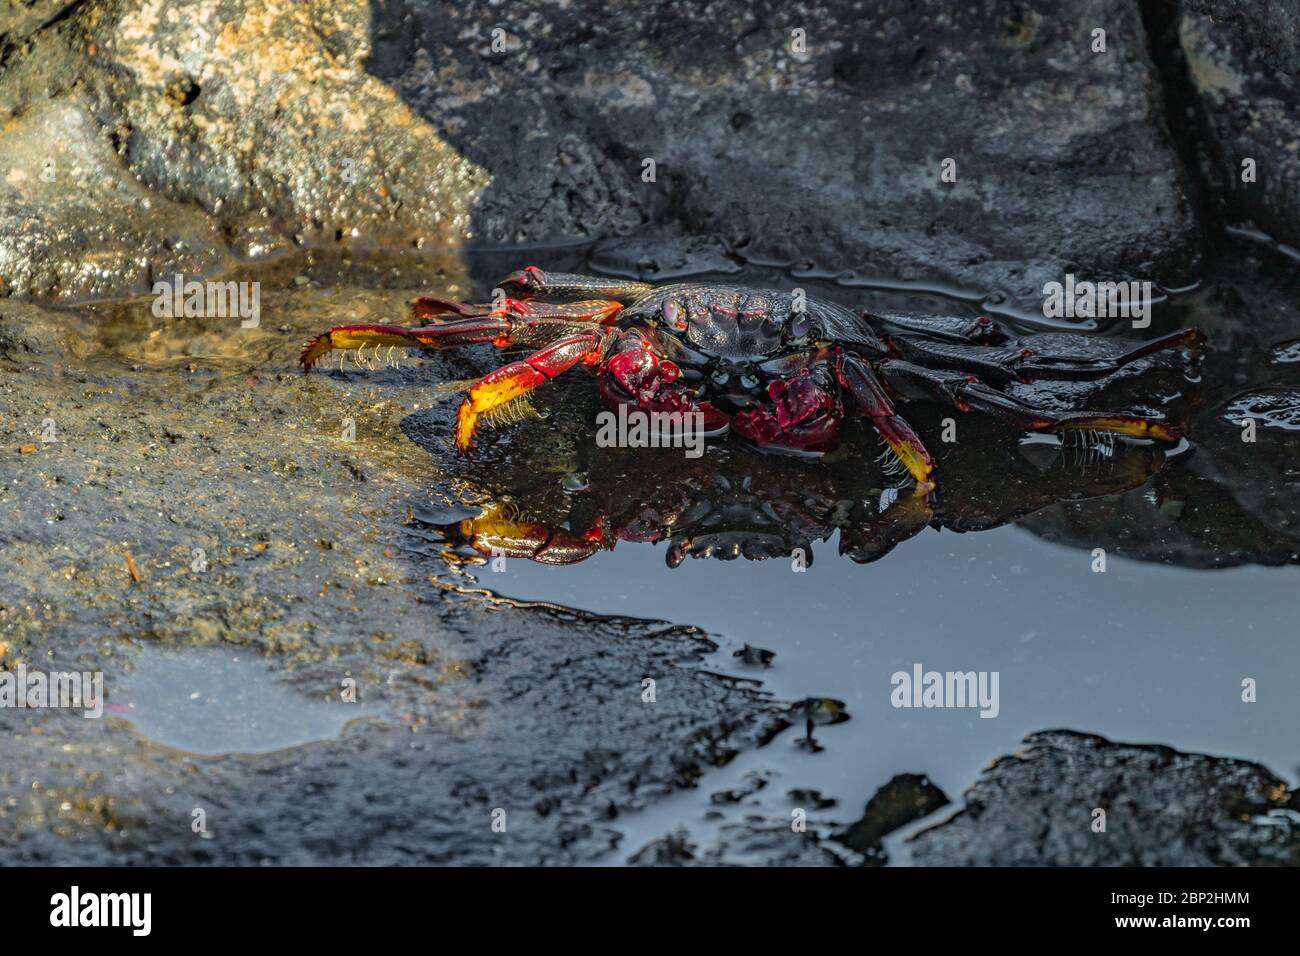 Crabe rouge - Grapsus adscénsionis - rampant sur des pierres de lave sombres. Le crabe se basse au soleil près d'une petite flaque de mer dans laquelle sa réflexion est v Banque D'Images